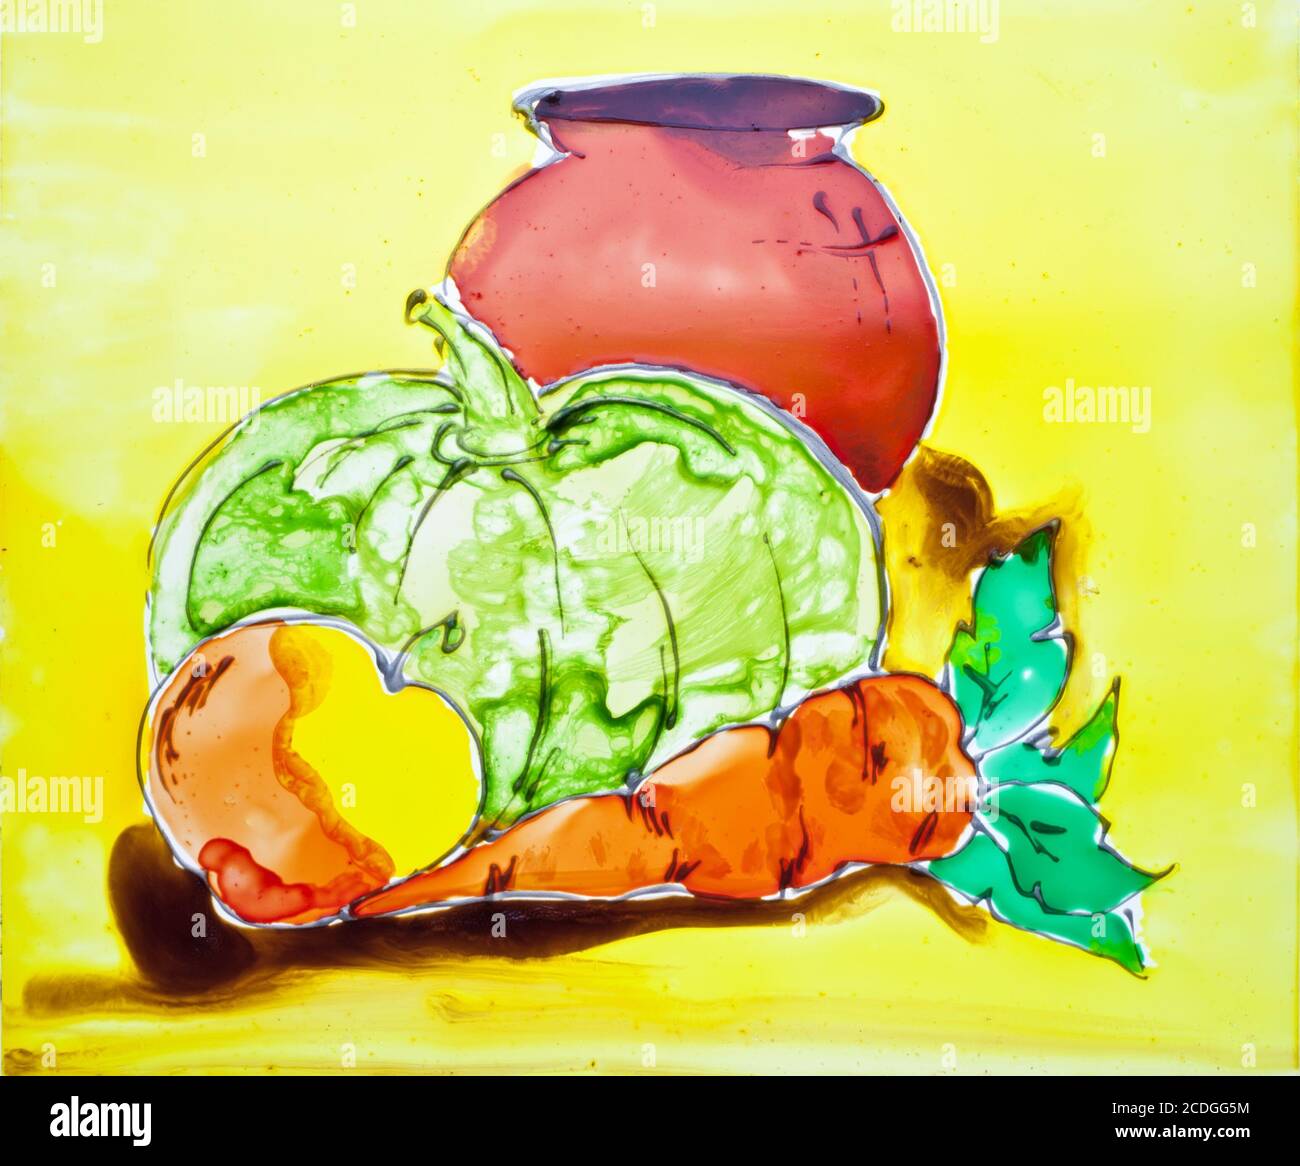 Karotten, Kürbis, Apfel und Krug werden durch durchscheinende Farben auf Glas gezogen Stockfoto